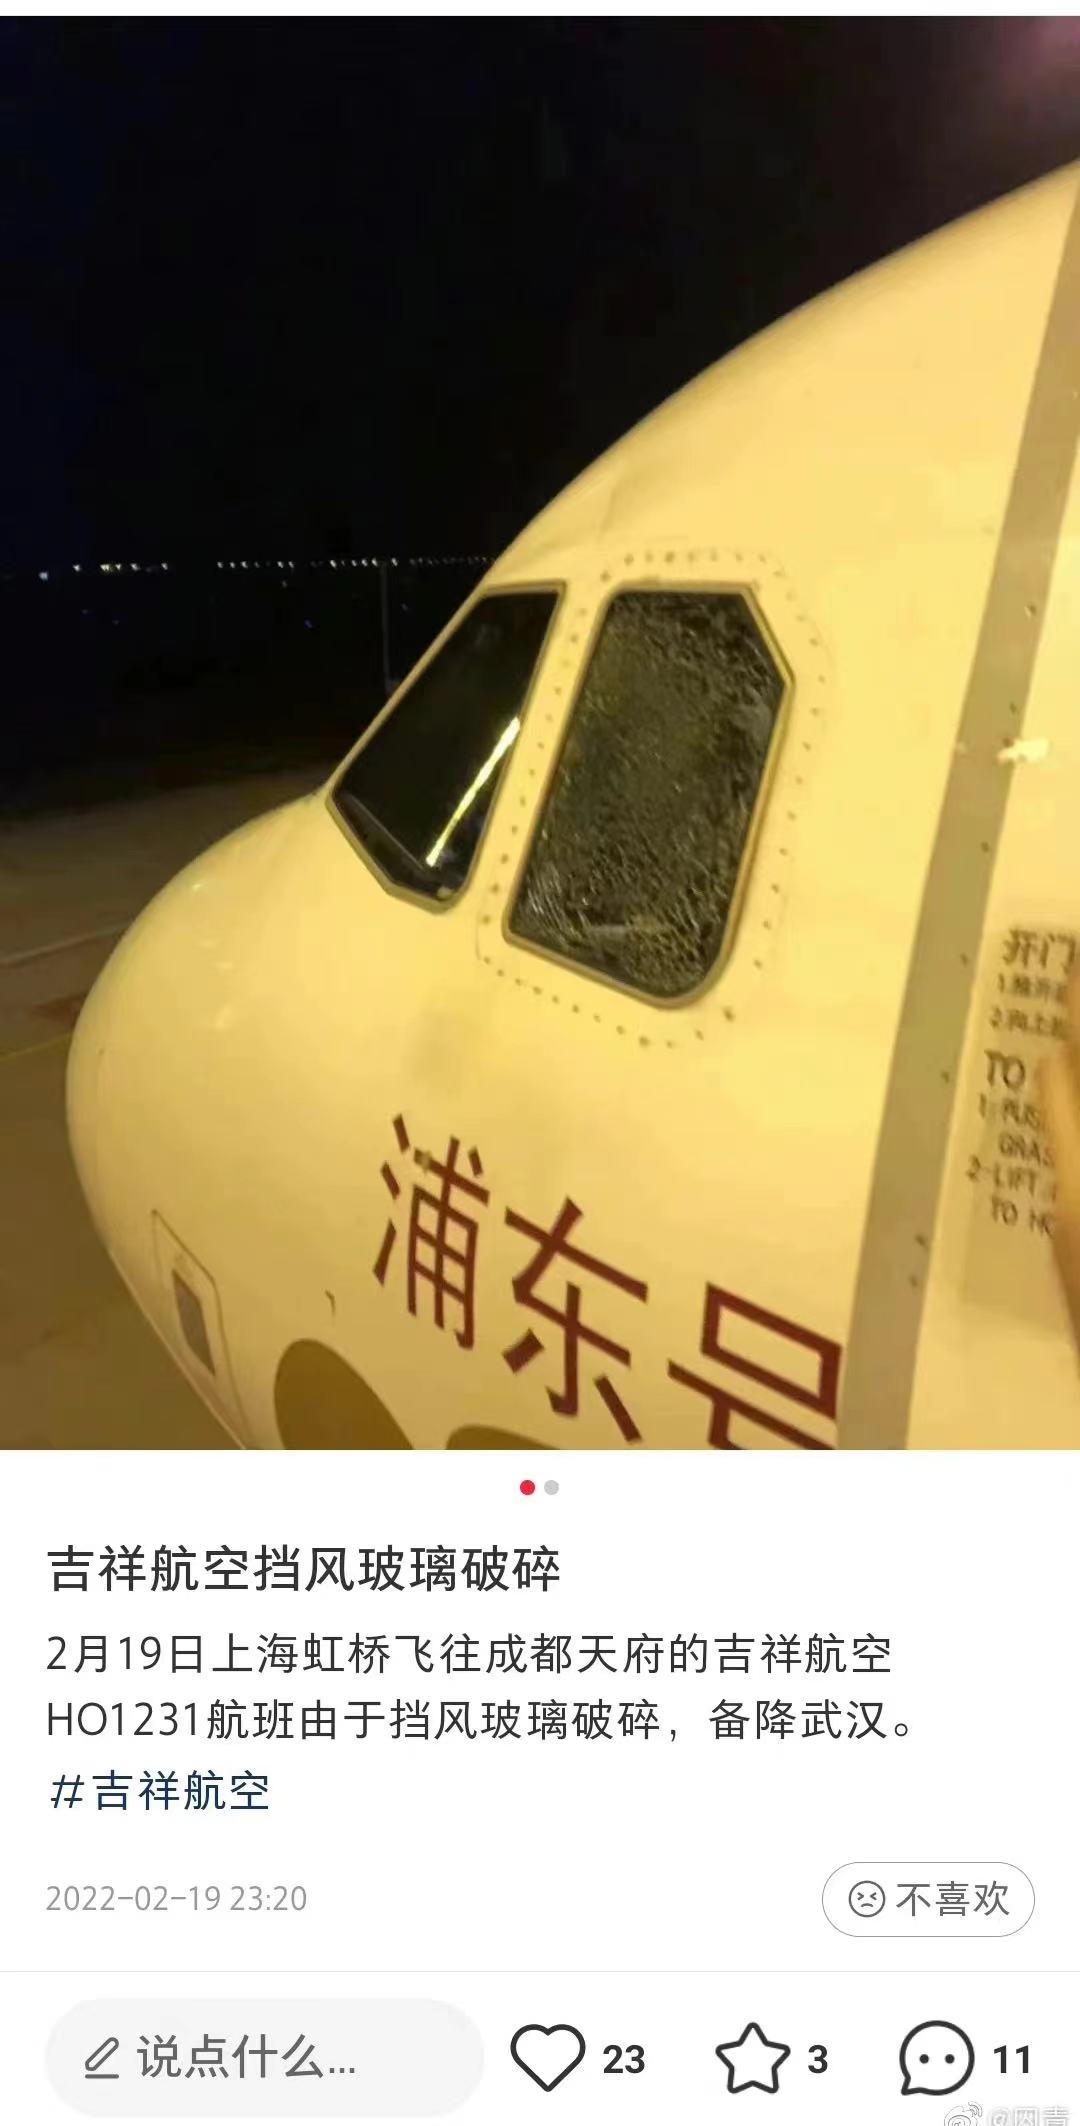 吉祥航空1号航班飞行途中侧风挡玻璃出现裂纹 紧急下降后准备降落武汉